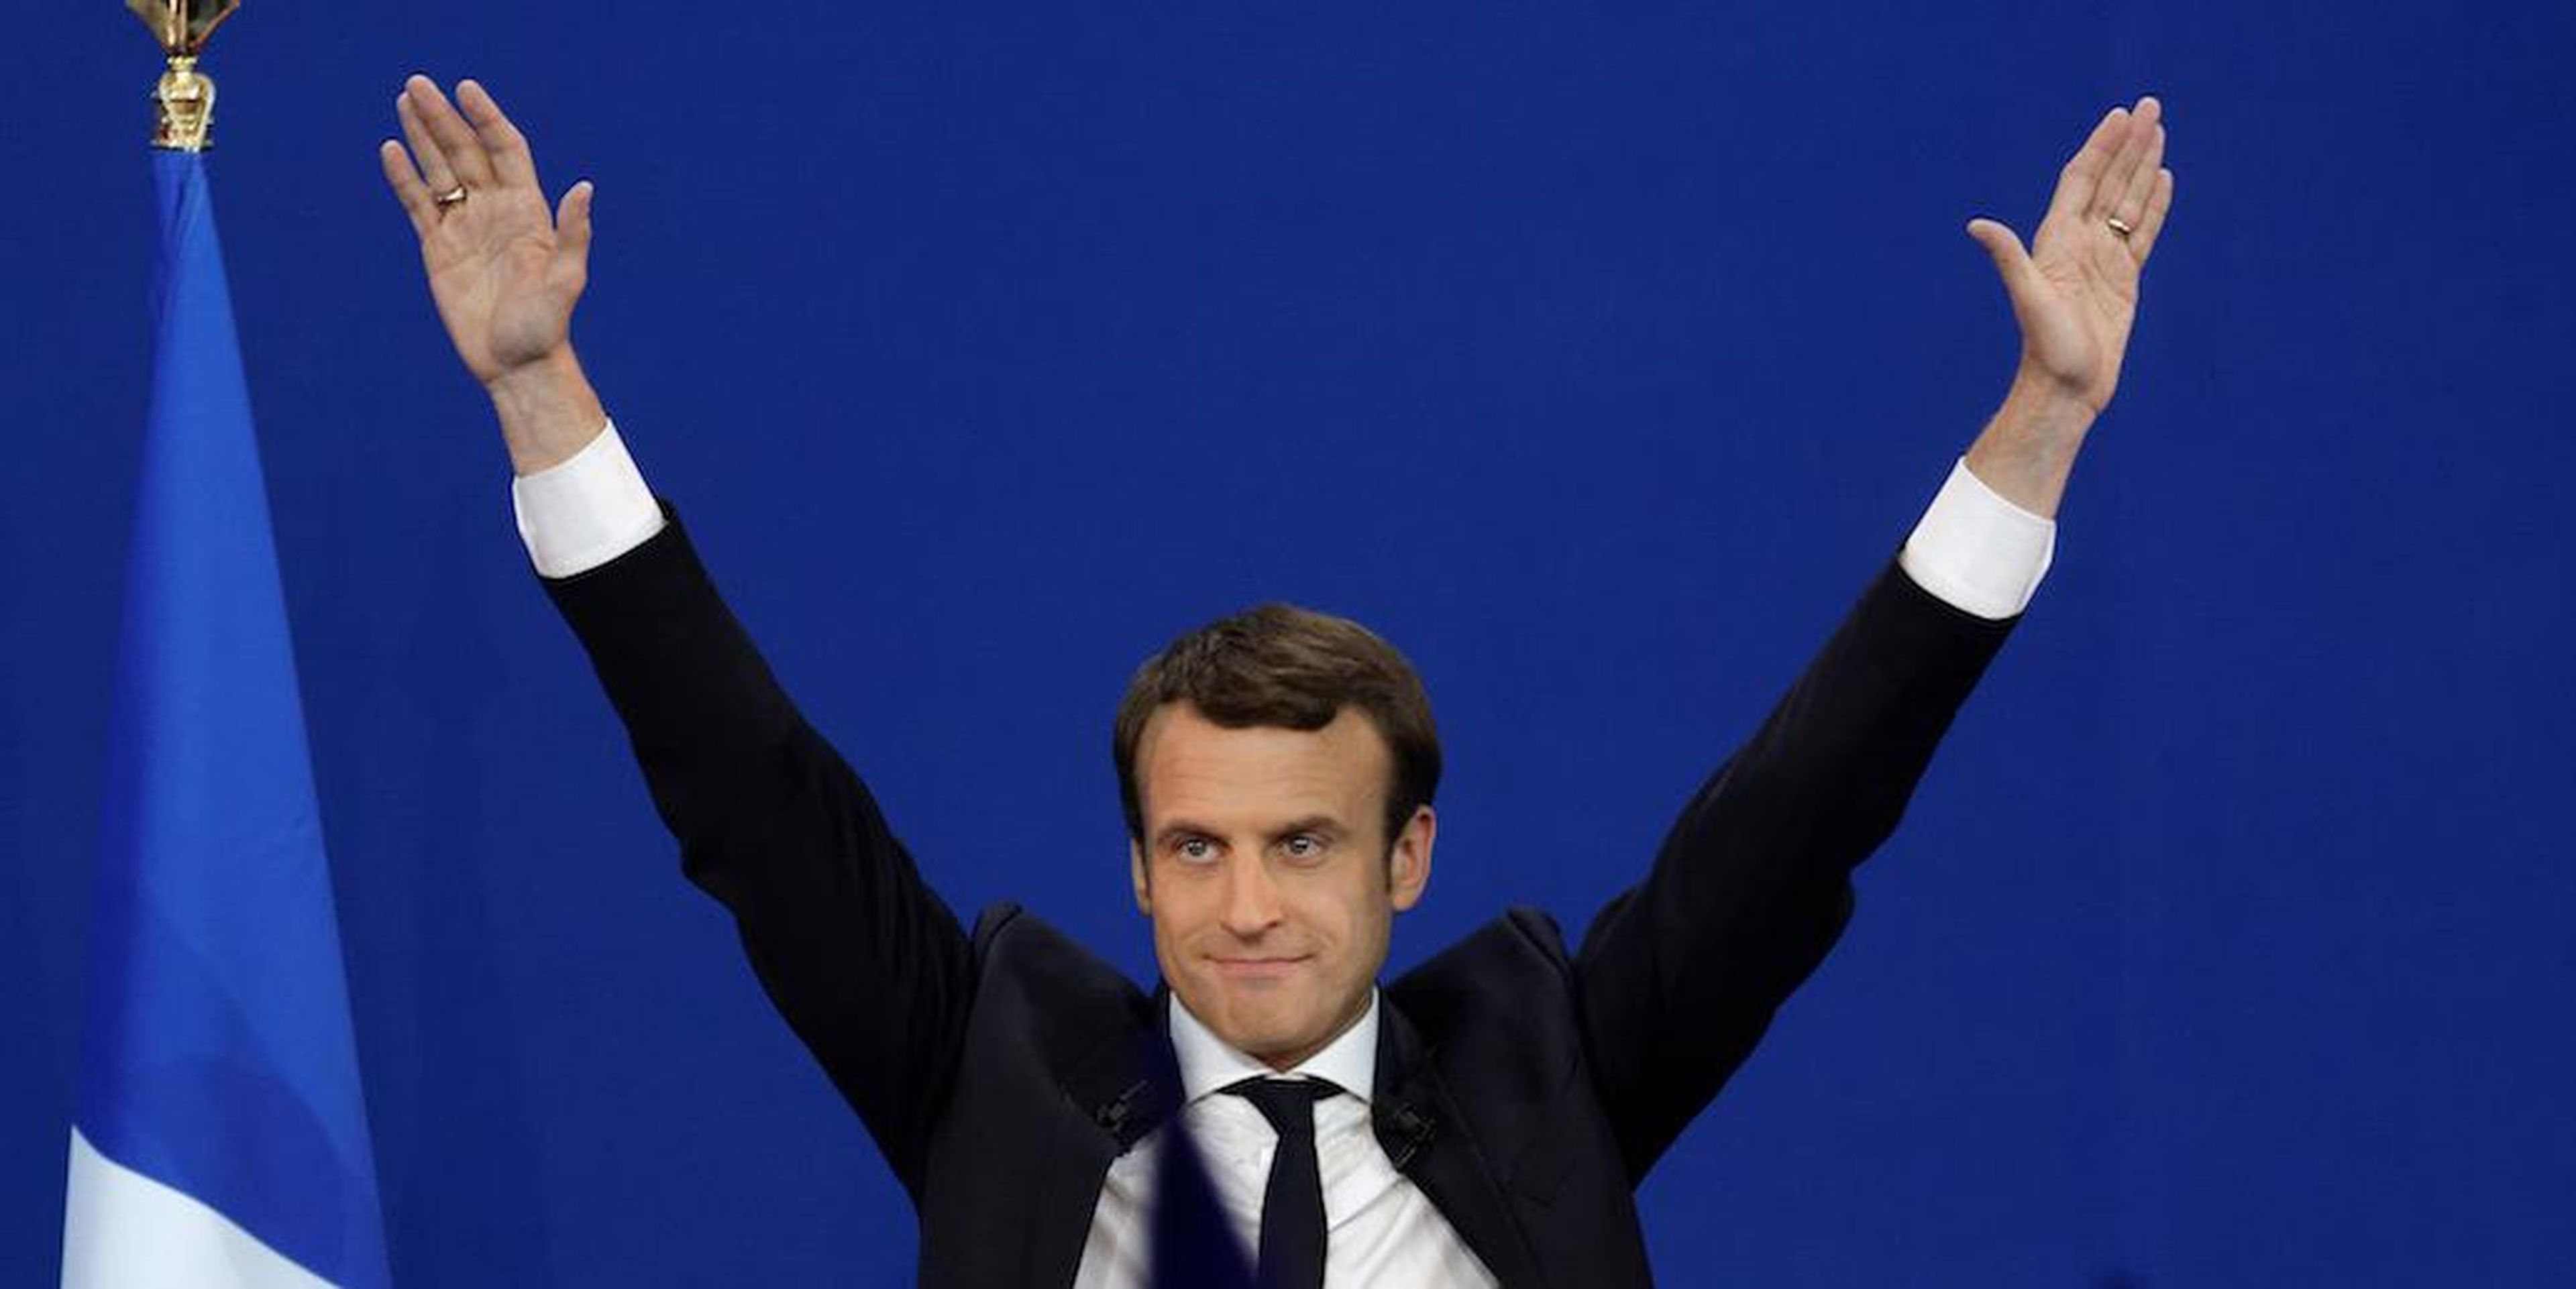 El presidente de Francia Emmanuel Macron